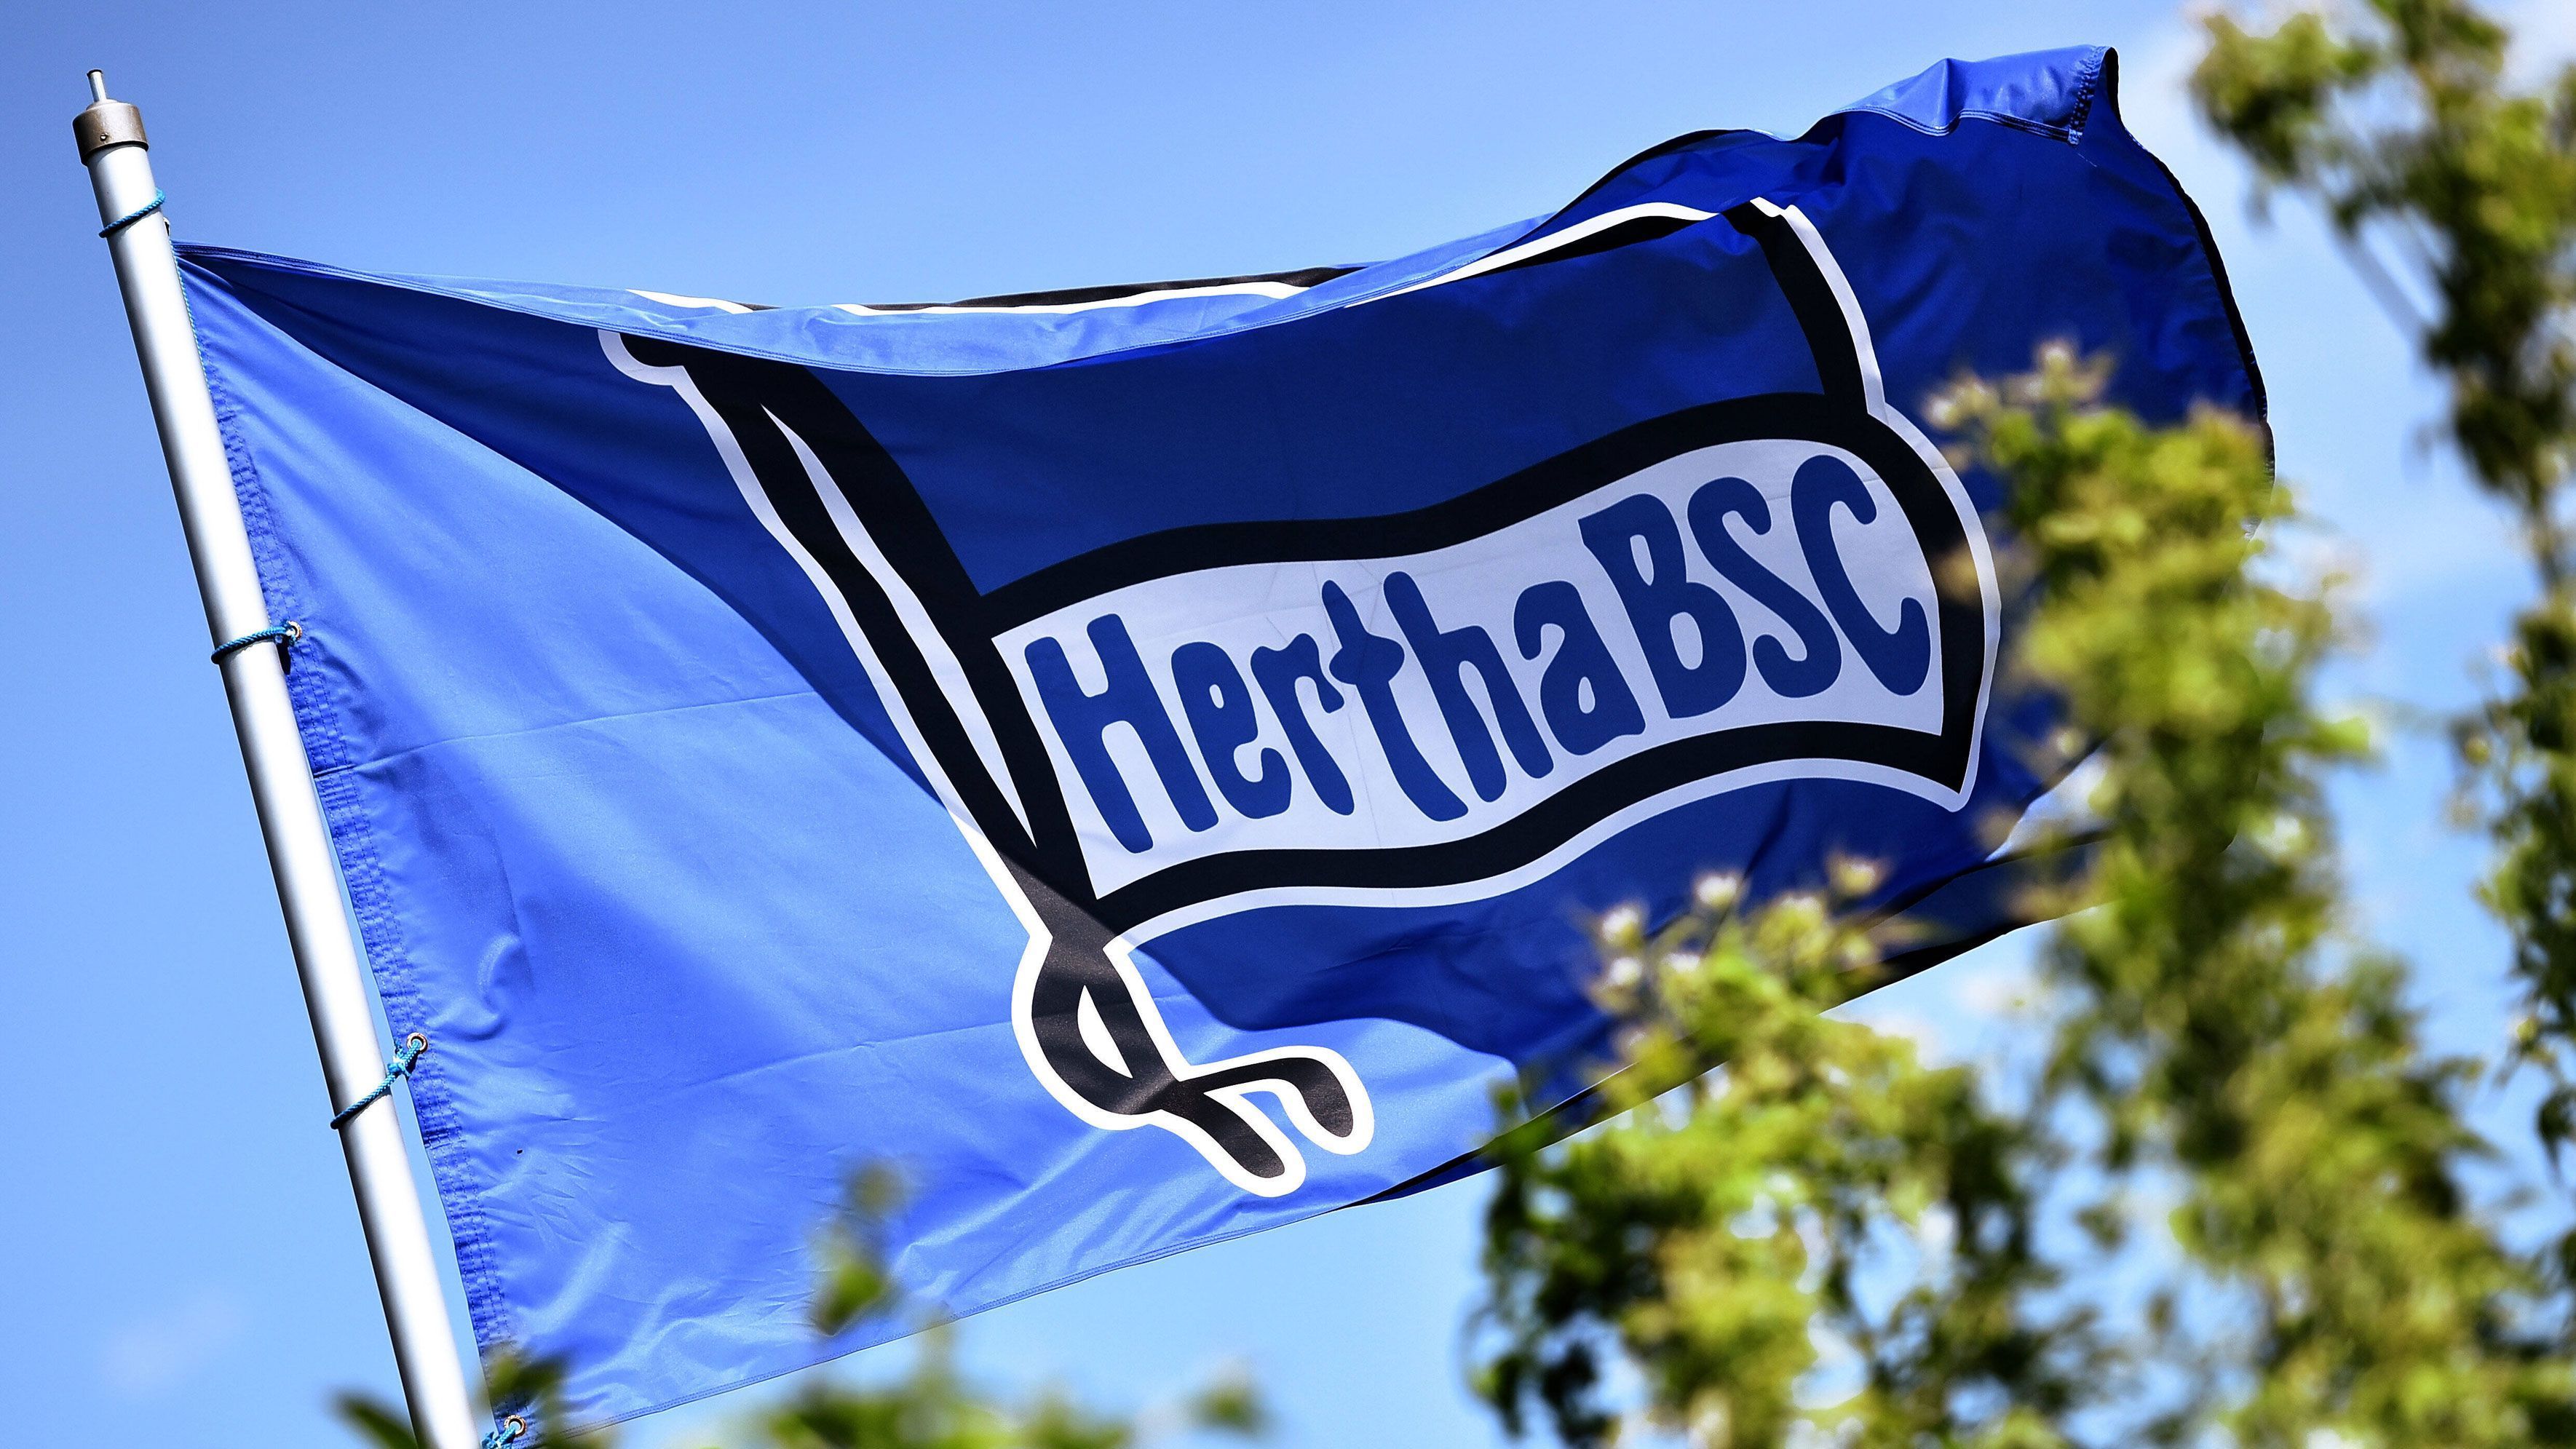 
                <strong>Platz 6 (geteilt): Hertha BSC</strong><br>
                Gesamtpunktzahl: 36,5 -Facebook: 10  Punkte, Instagram: 8 Punkte, YouTube: 10,5 Punkte, Twitter: 8 Punkte -Auch die Hertha gewinnt vier Plätze, lässt aber insgesamt etwas nach. Vor allem bei Twitter lässt der "Big City Club" gleich zwei Punkte liegen.
              